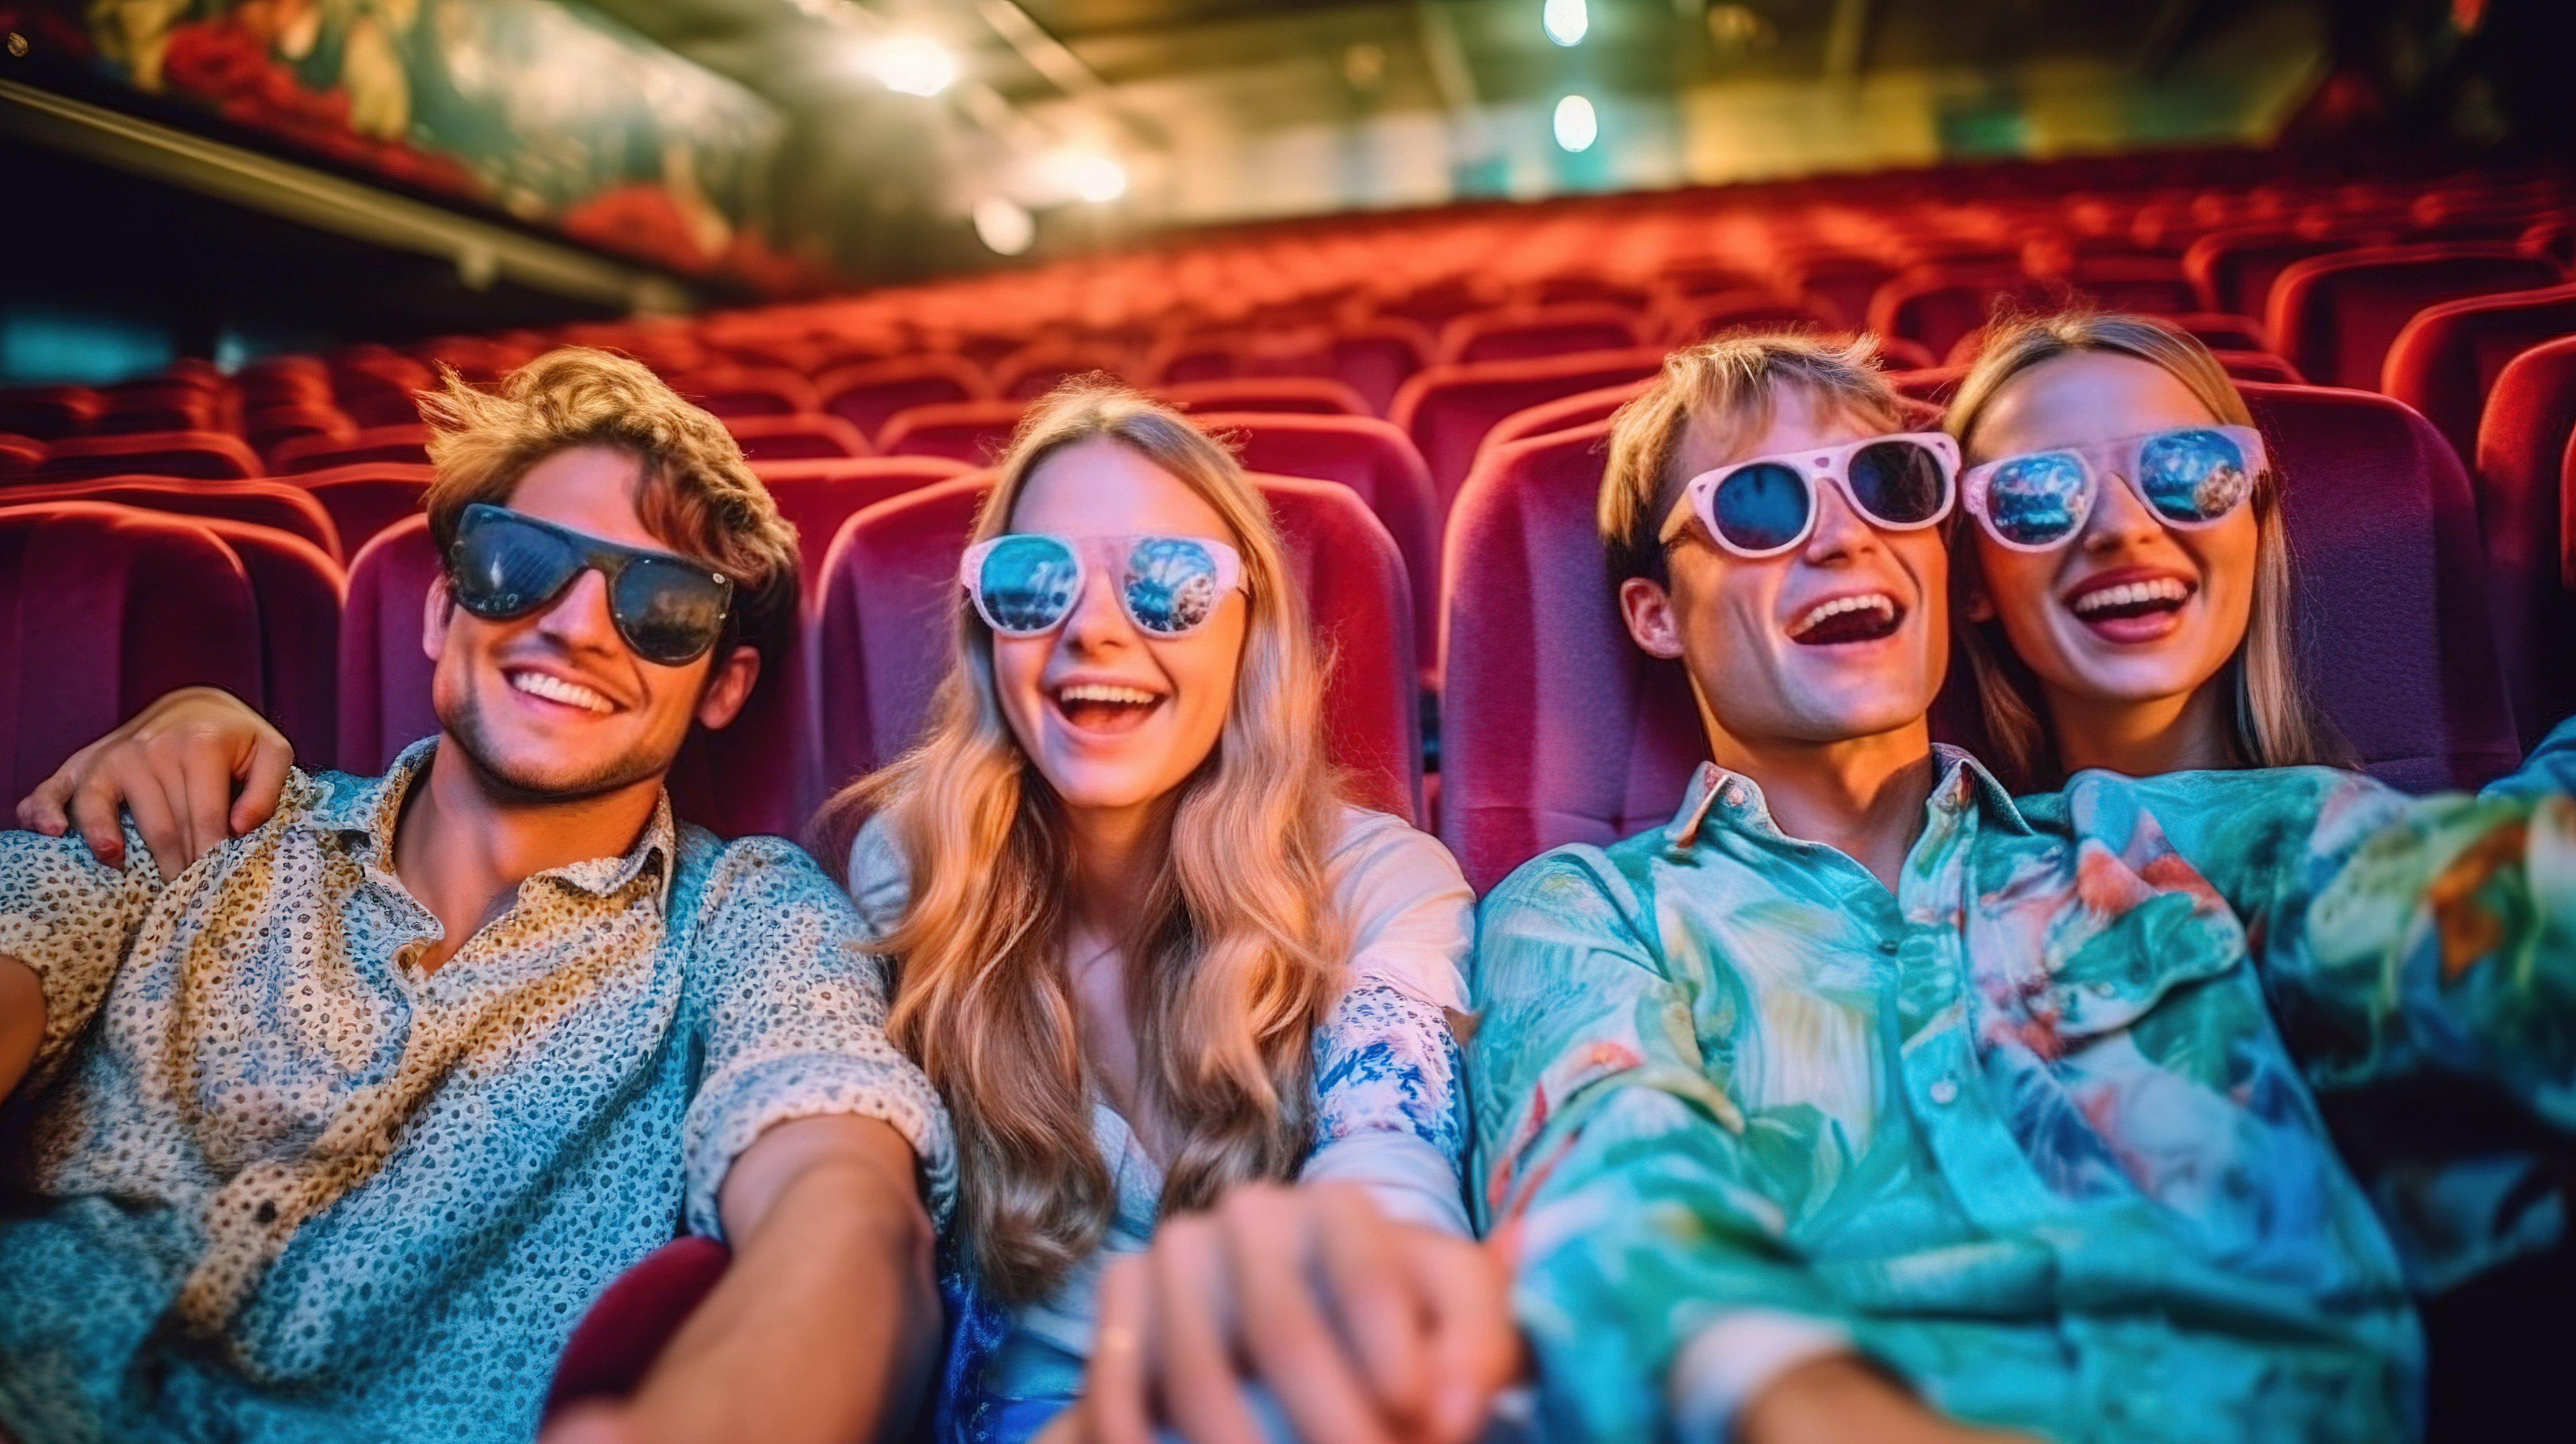 与好友在电影院欢笑并佩戴 3D 眼镜度过热闹的电影之夜图片